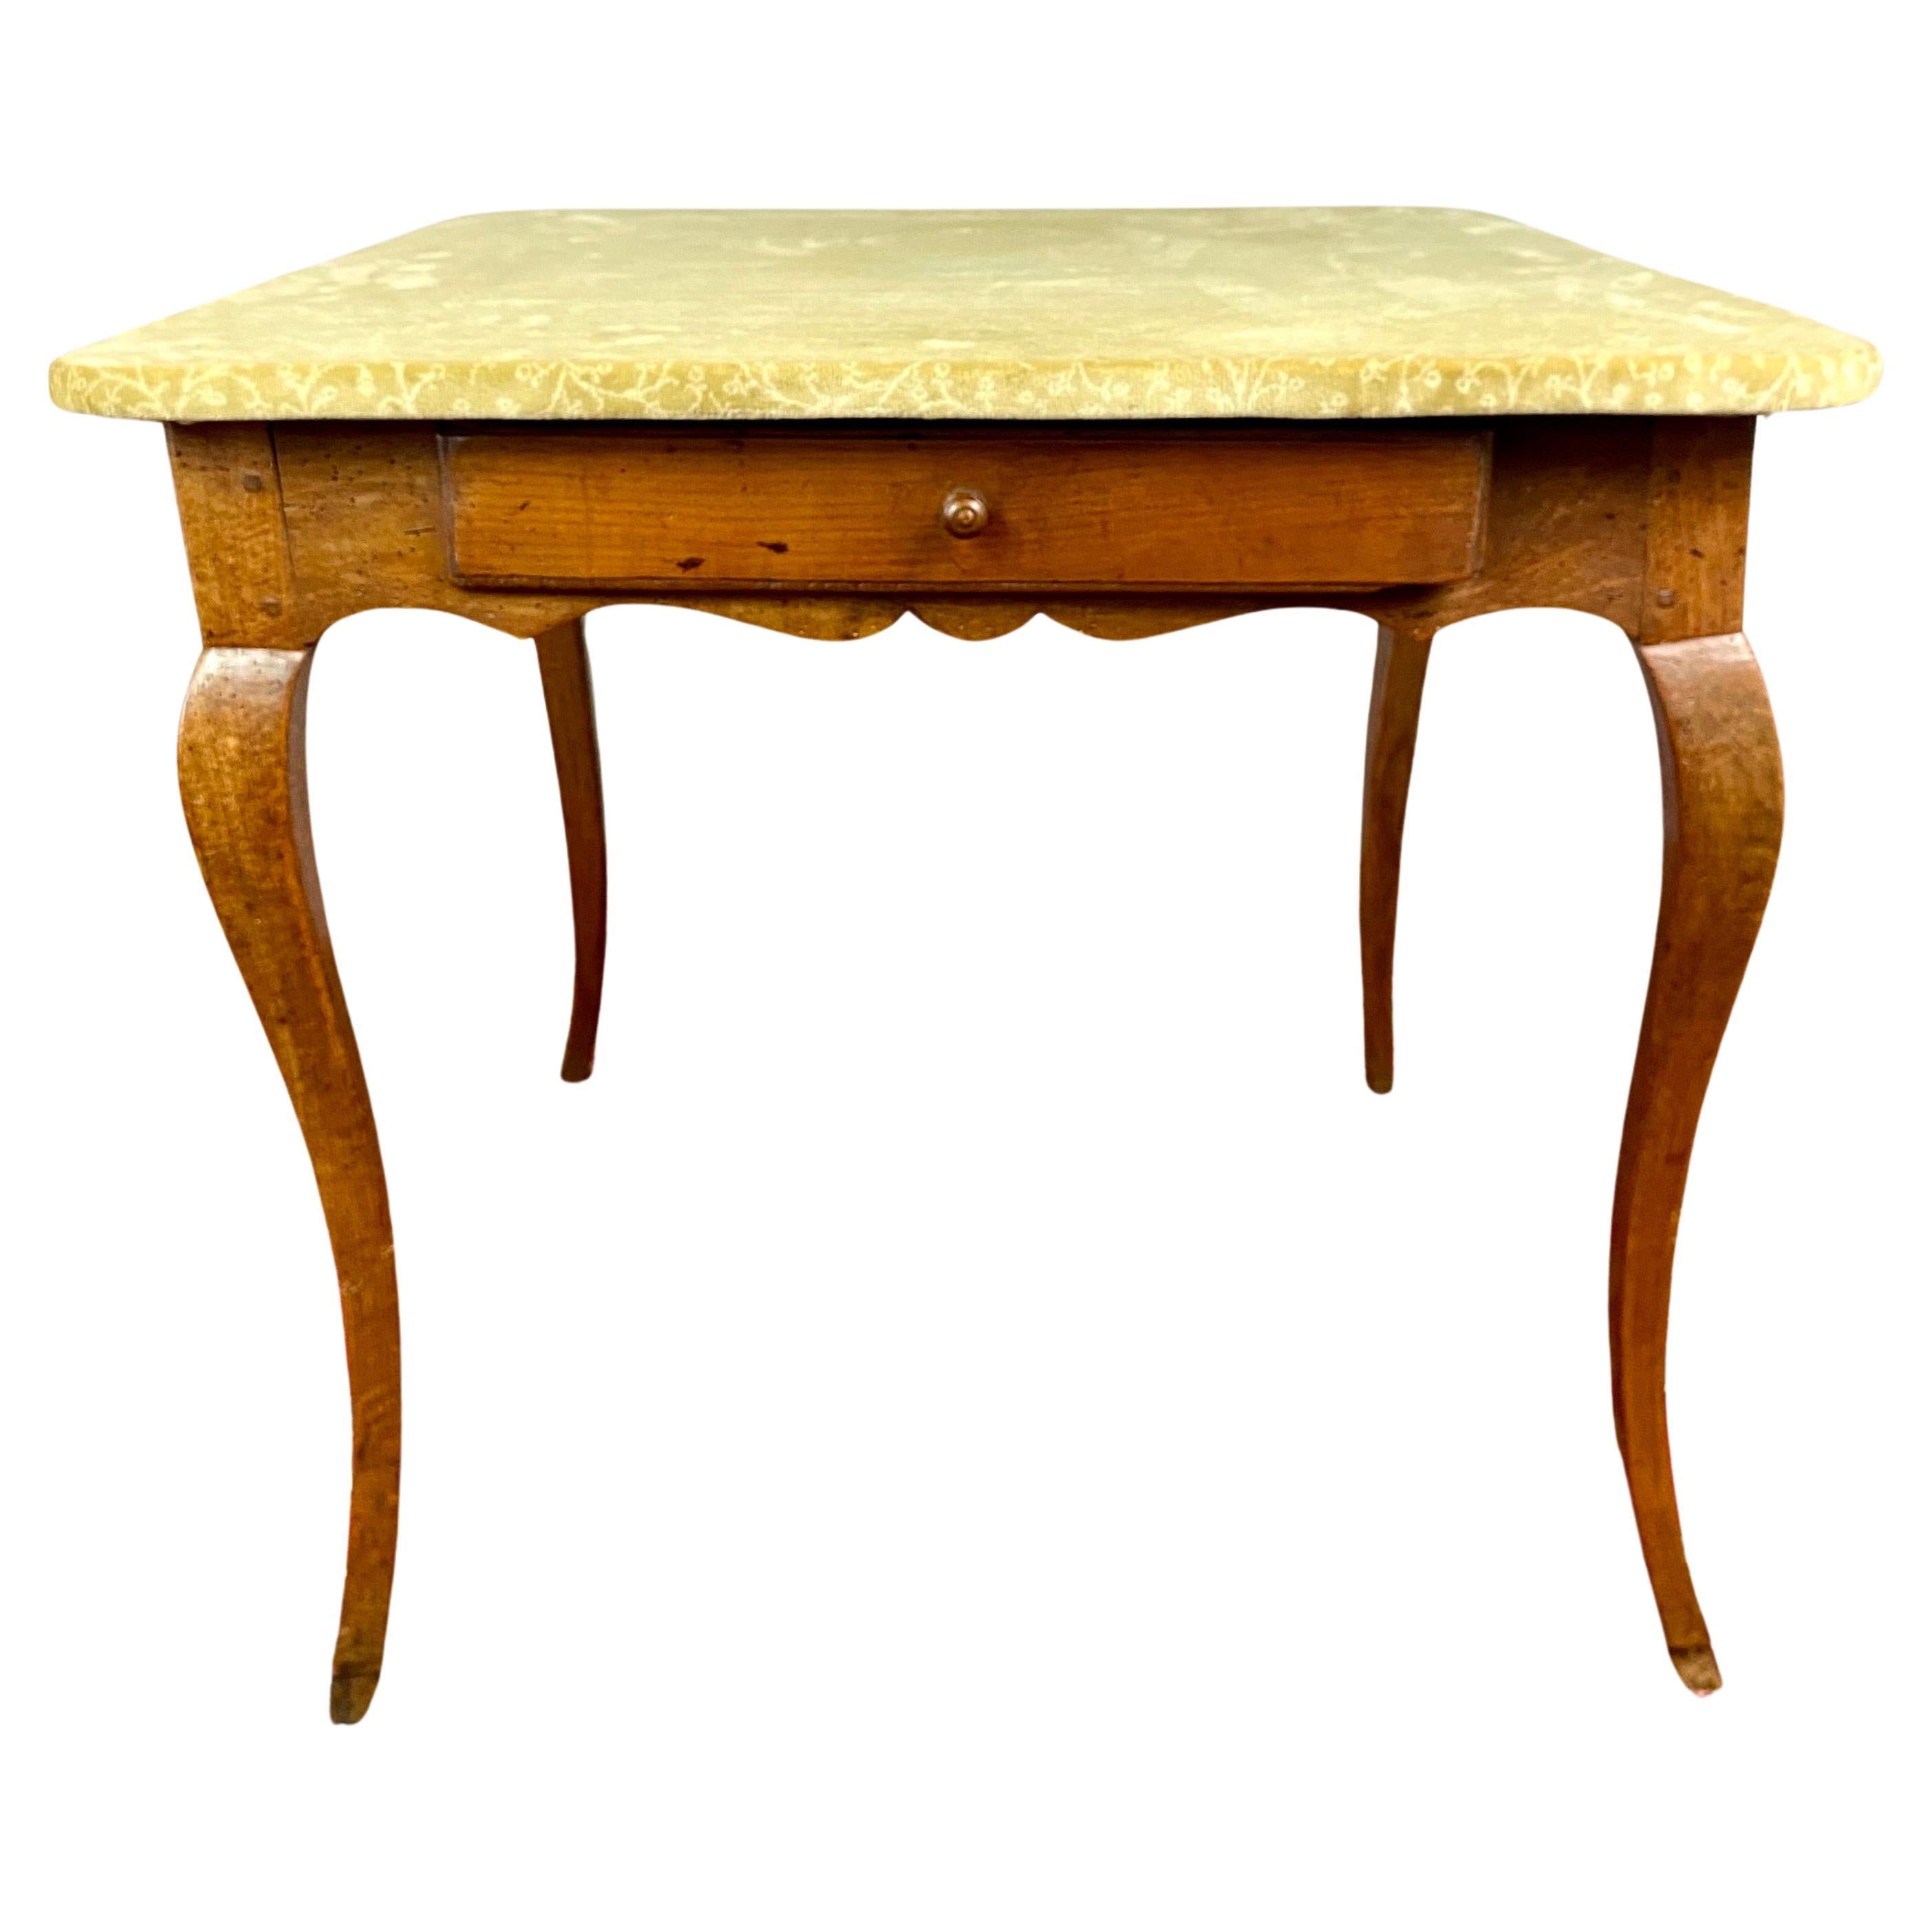 Table provençale / petit bureau / table à jeux - époque Louis XV - France XVIII